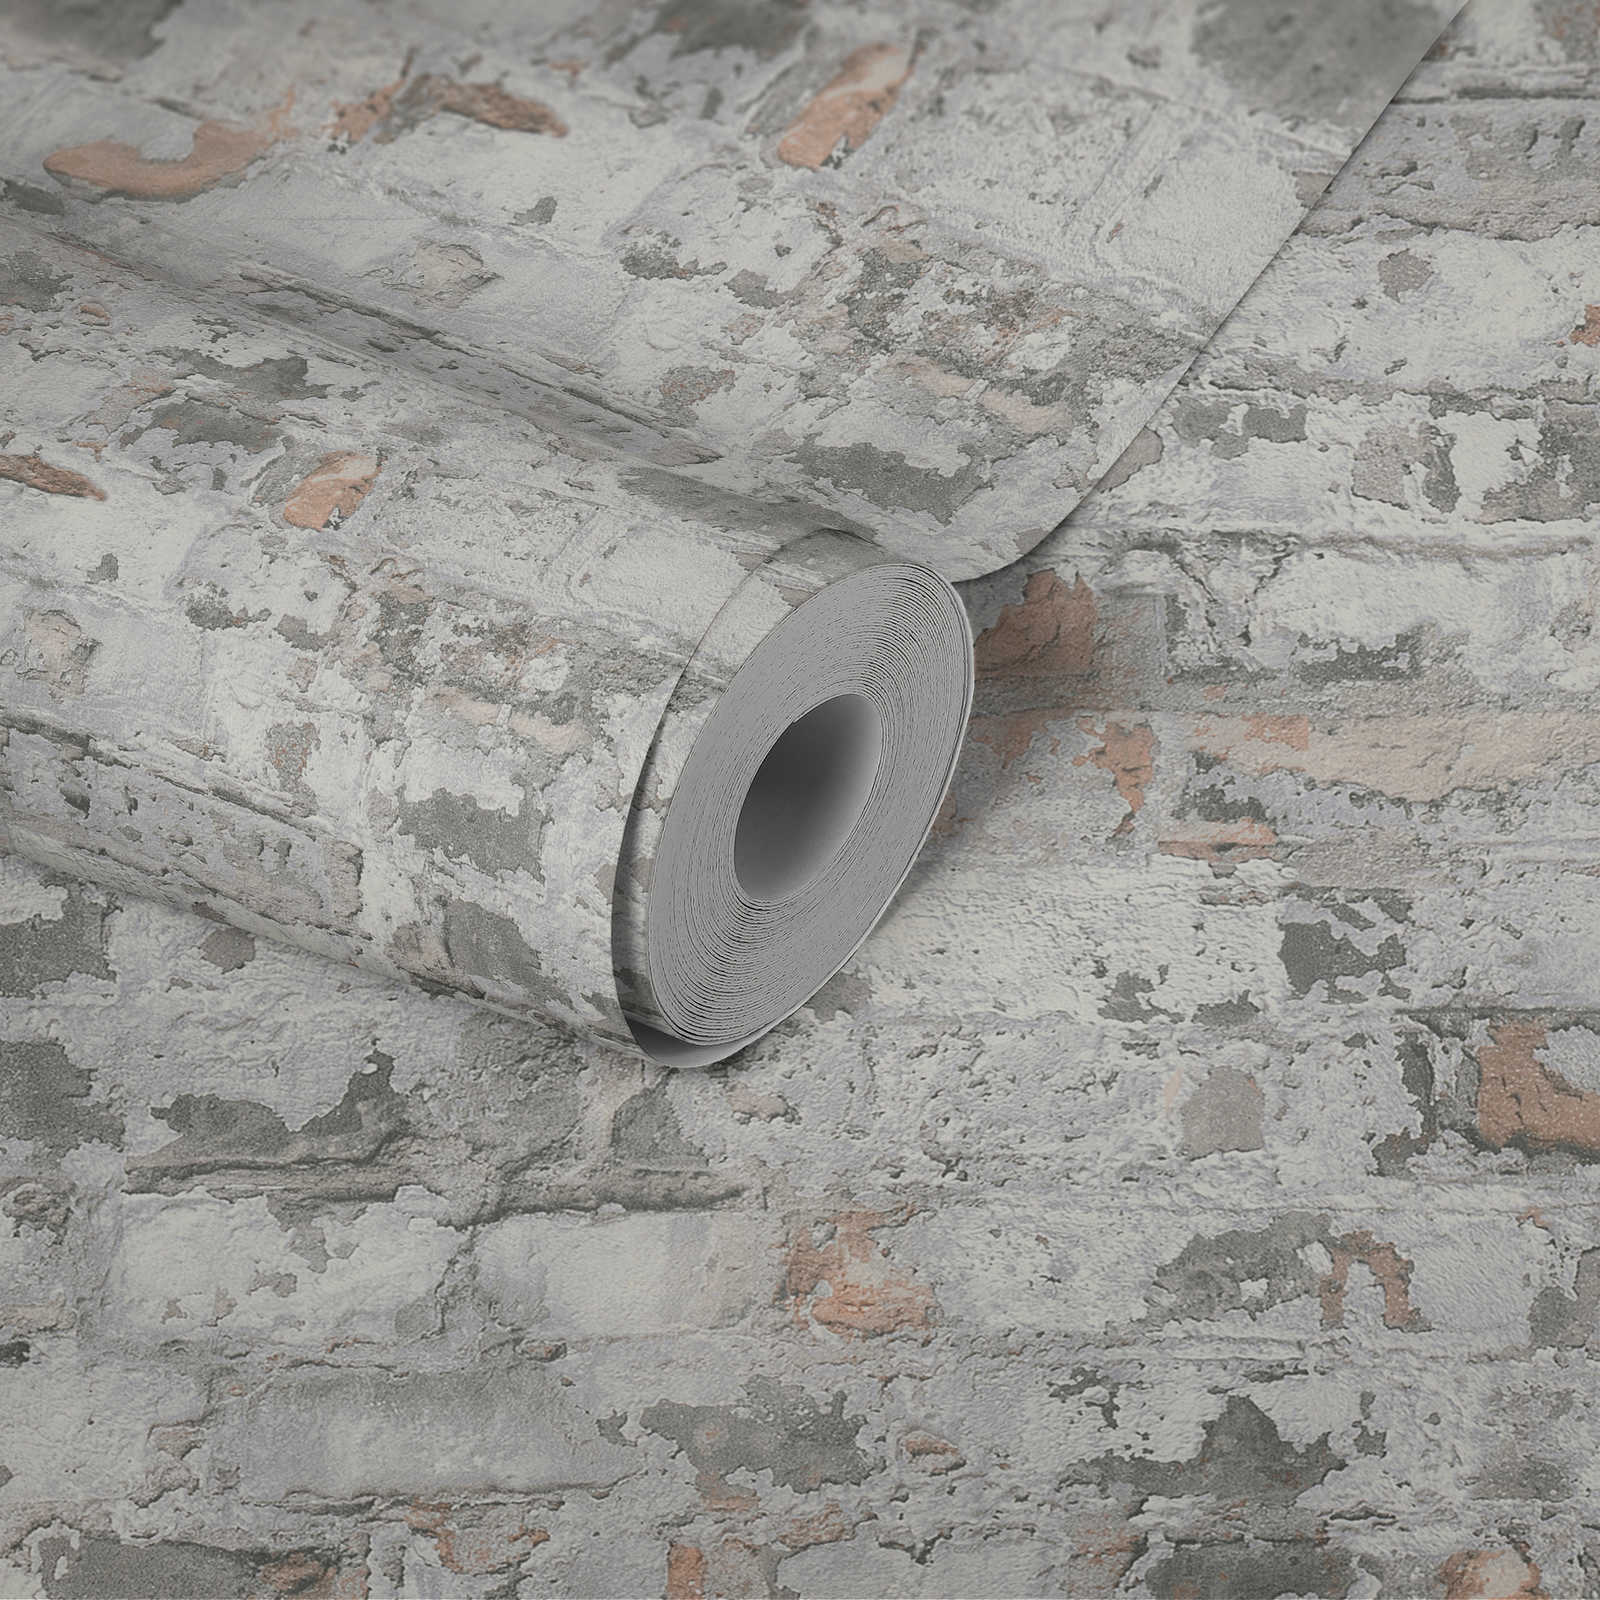             Rustikale Mauer-Tapete mit Backsteinen im Used-Design – Grau, Weiß
        